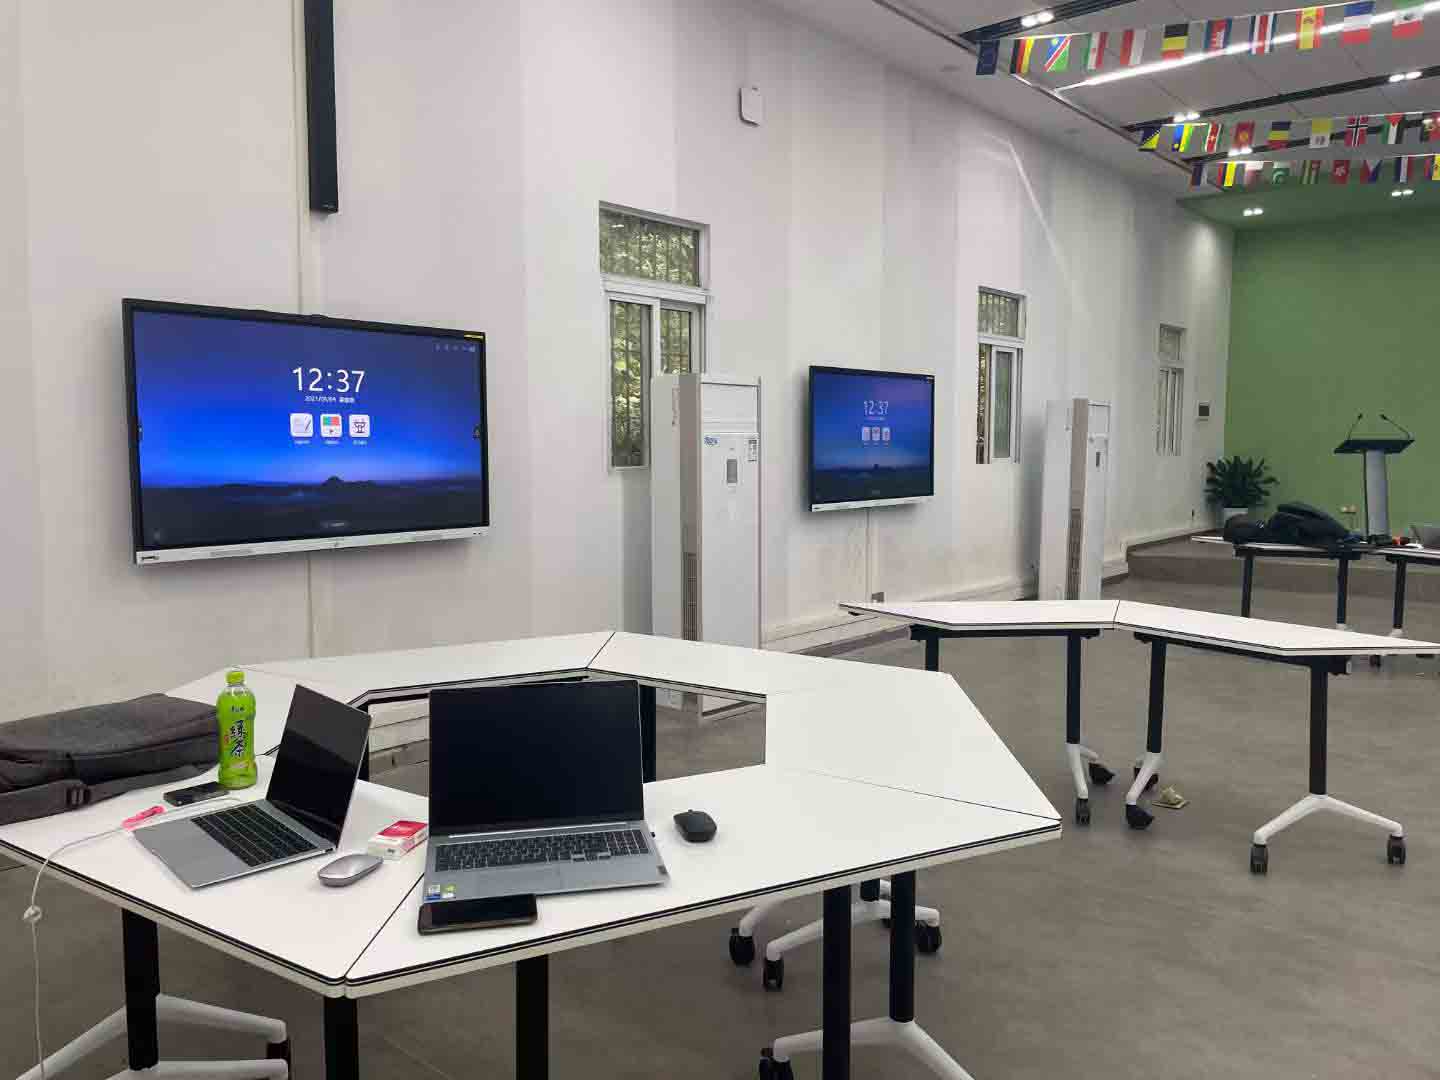 智能会议平板不仅仅用于会议室，还能用于教育、设计